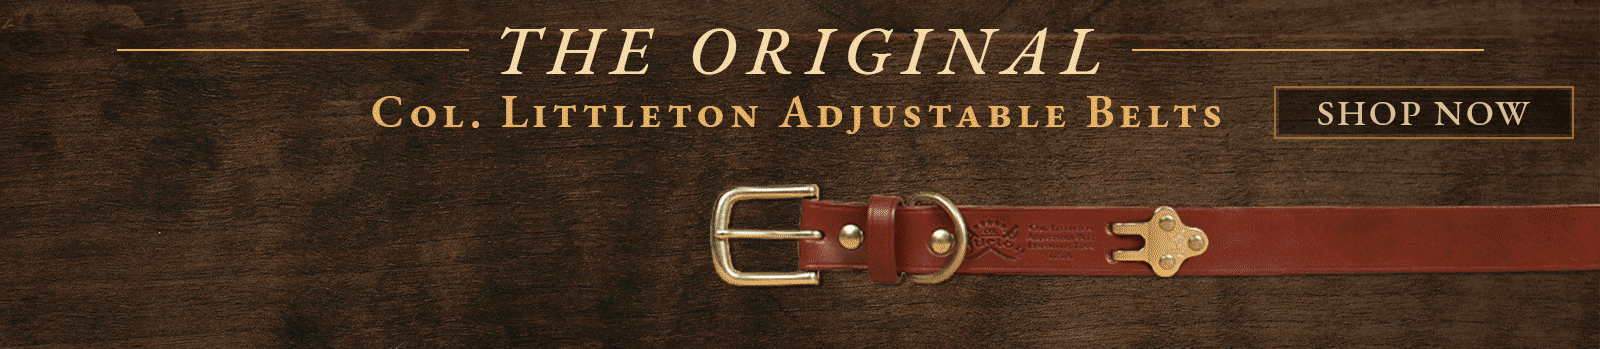 The Original Col. Littleton Adjustable Belt